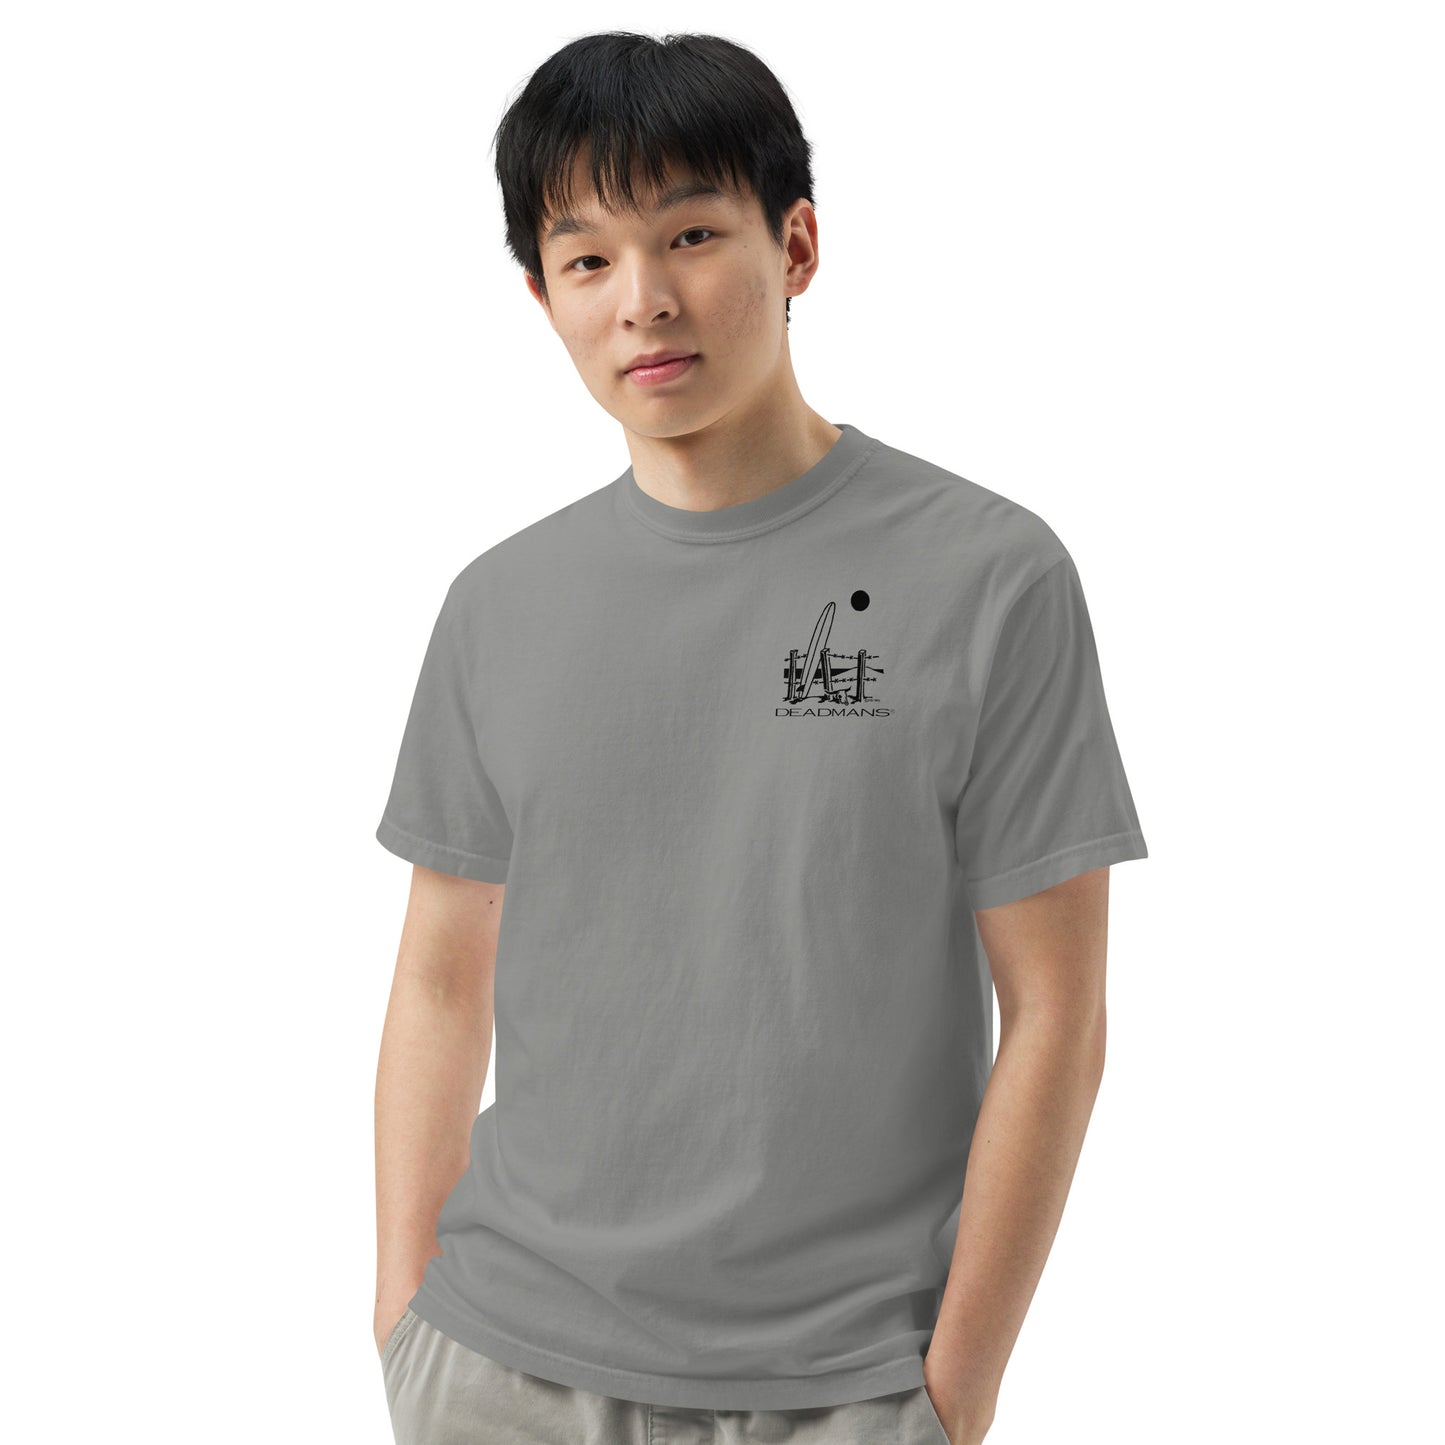 Men’s garment-dyed heavyweight t-shirt - Big Wave